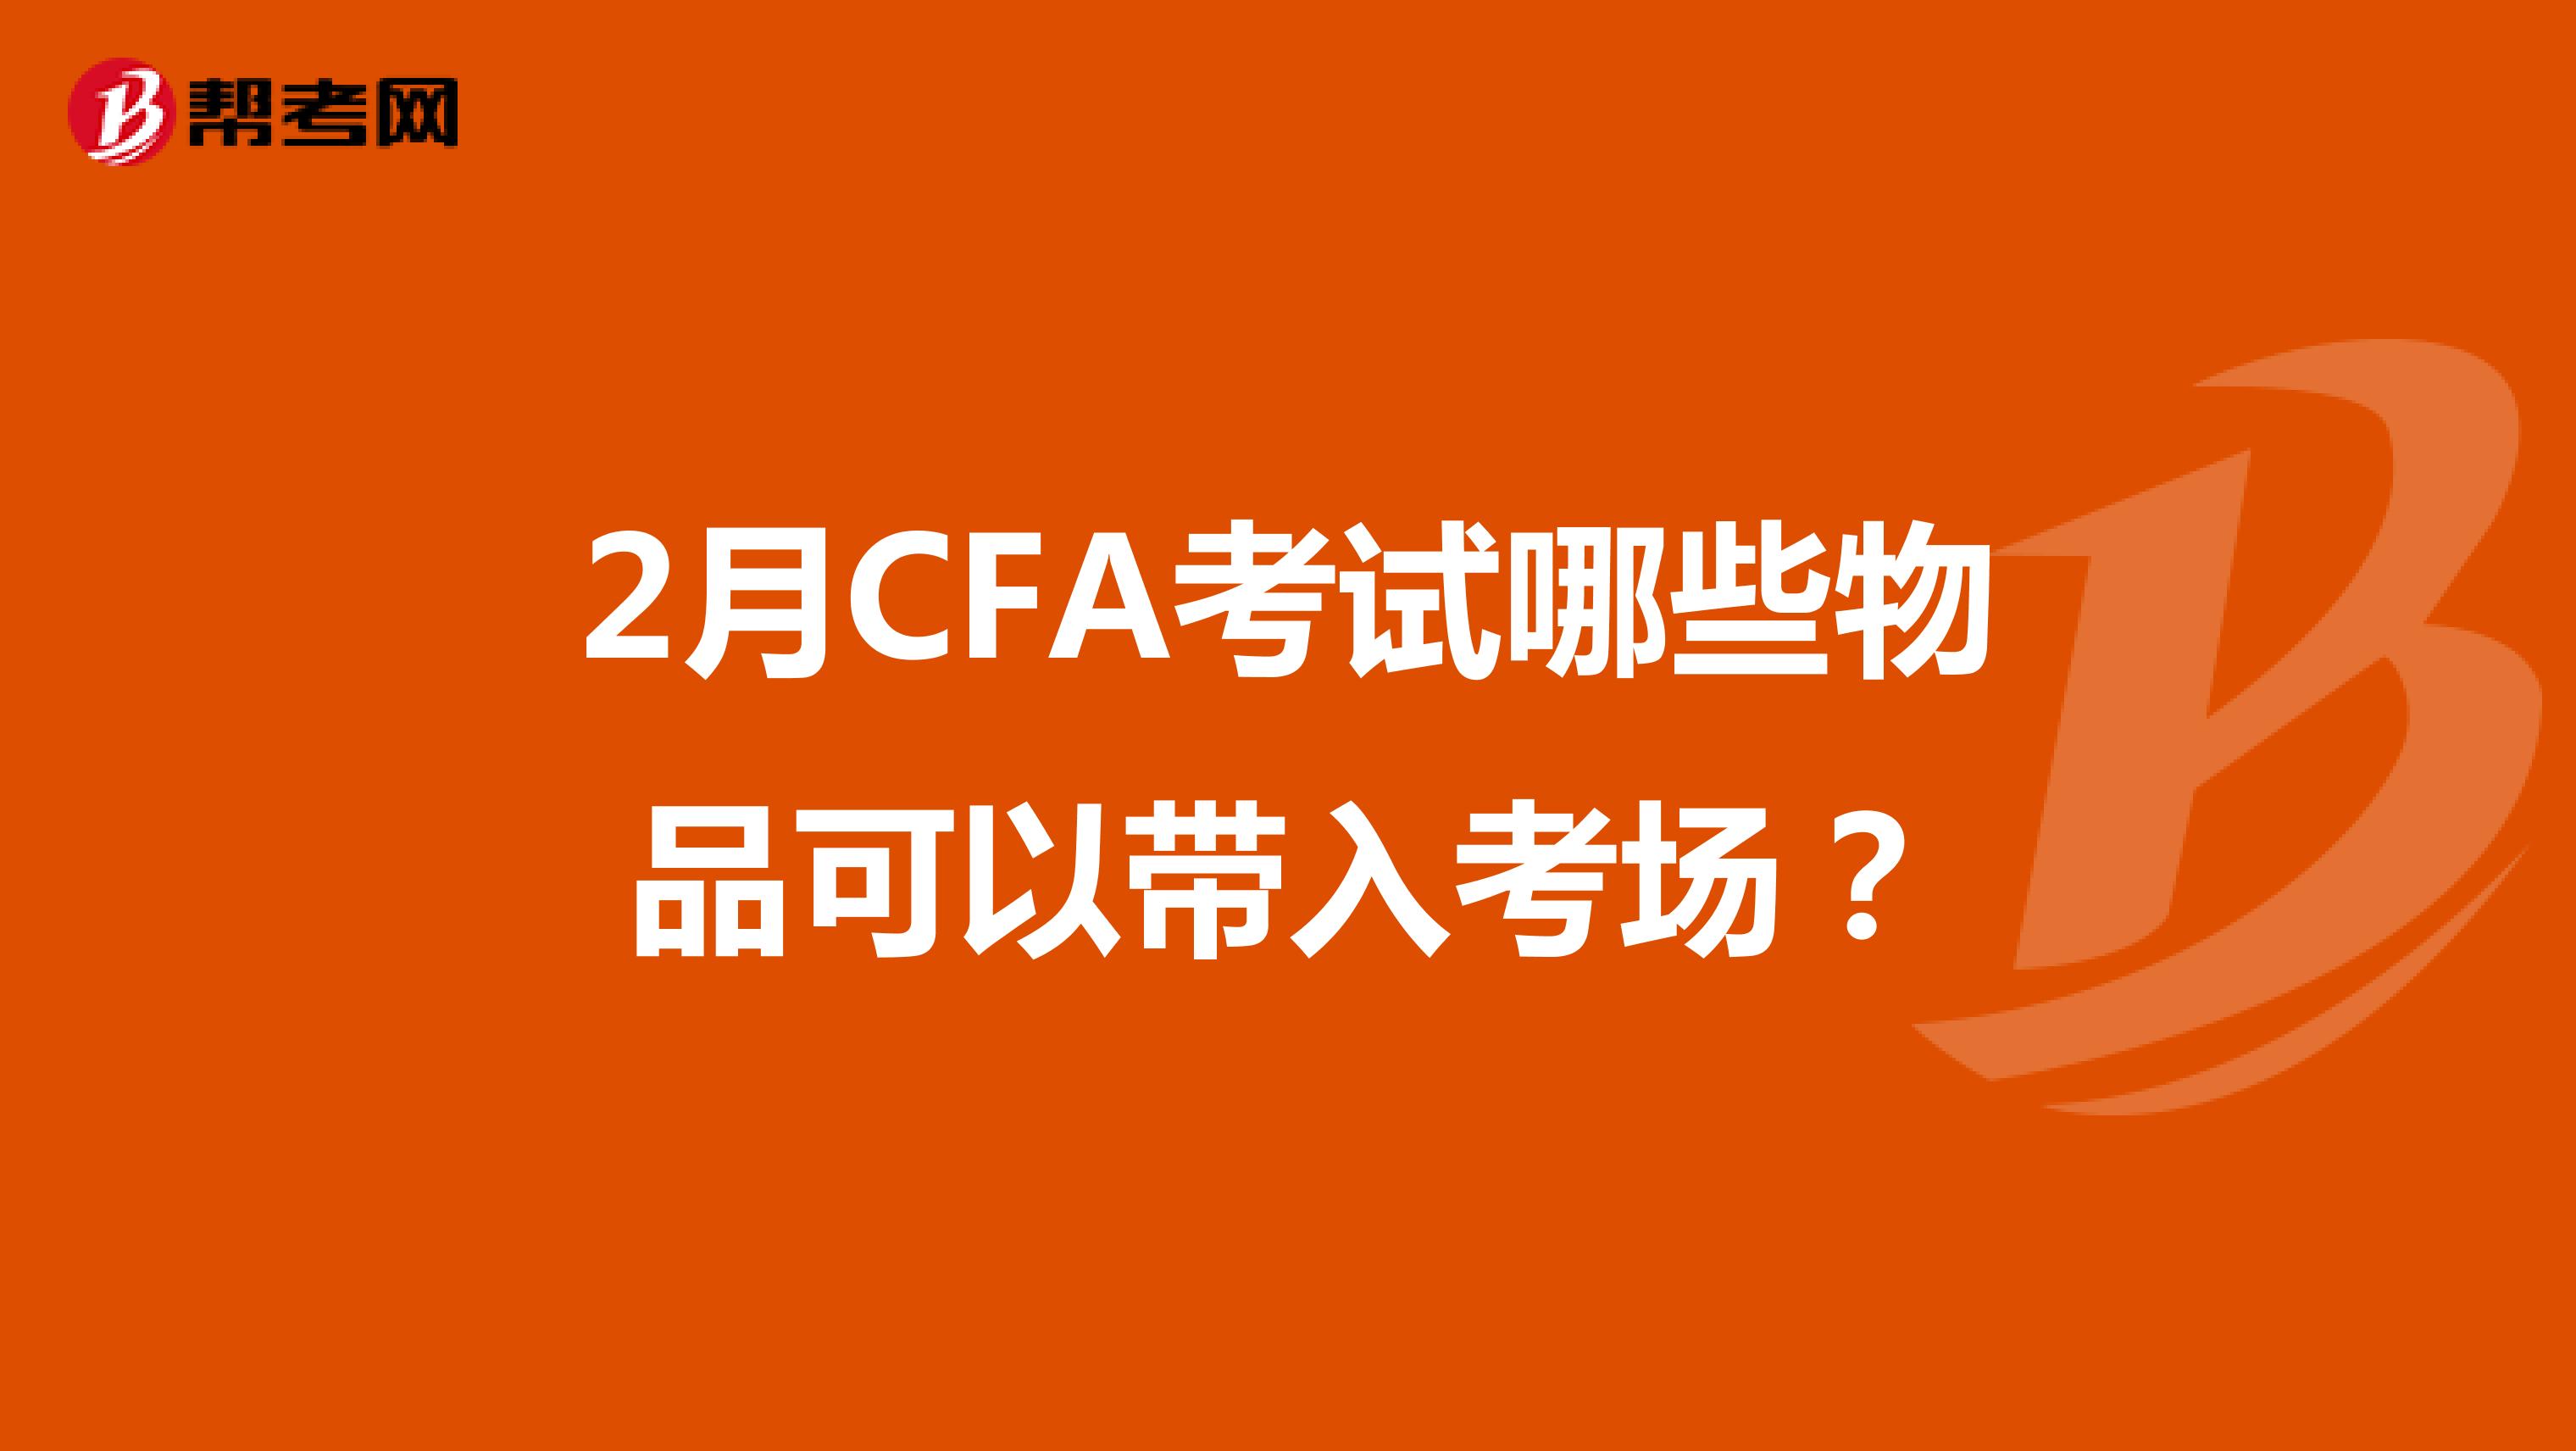 2月CFA考試哪些物品可以帶入考場？